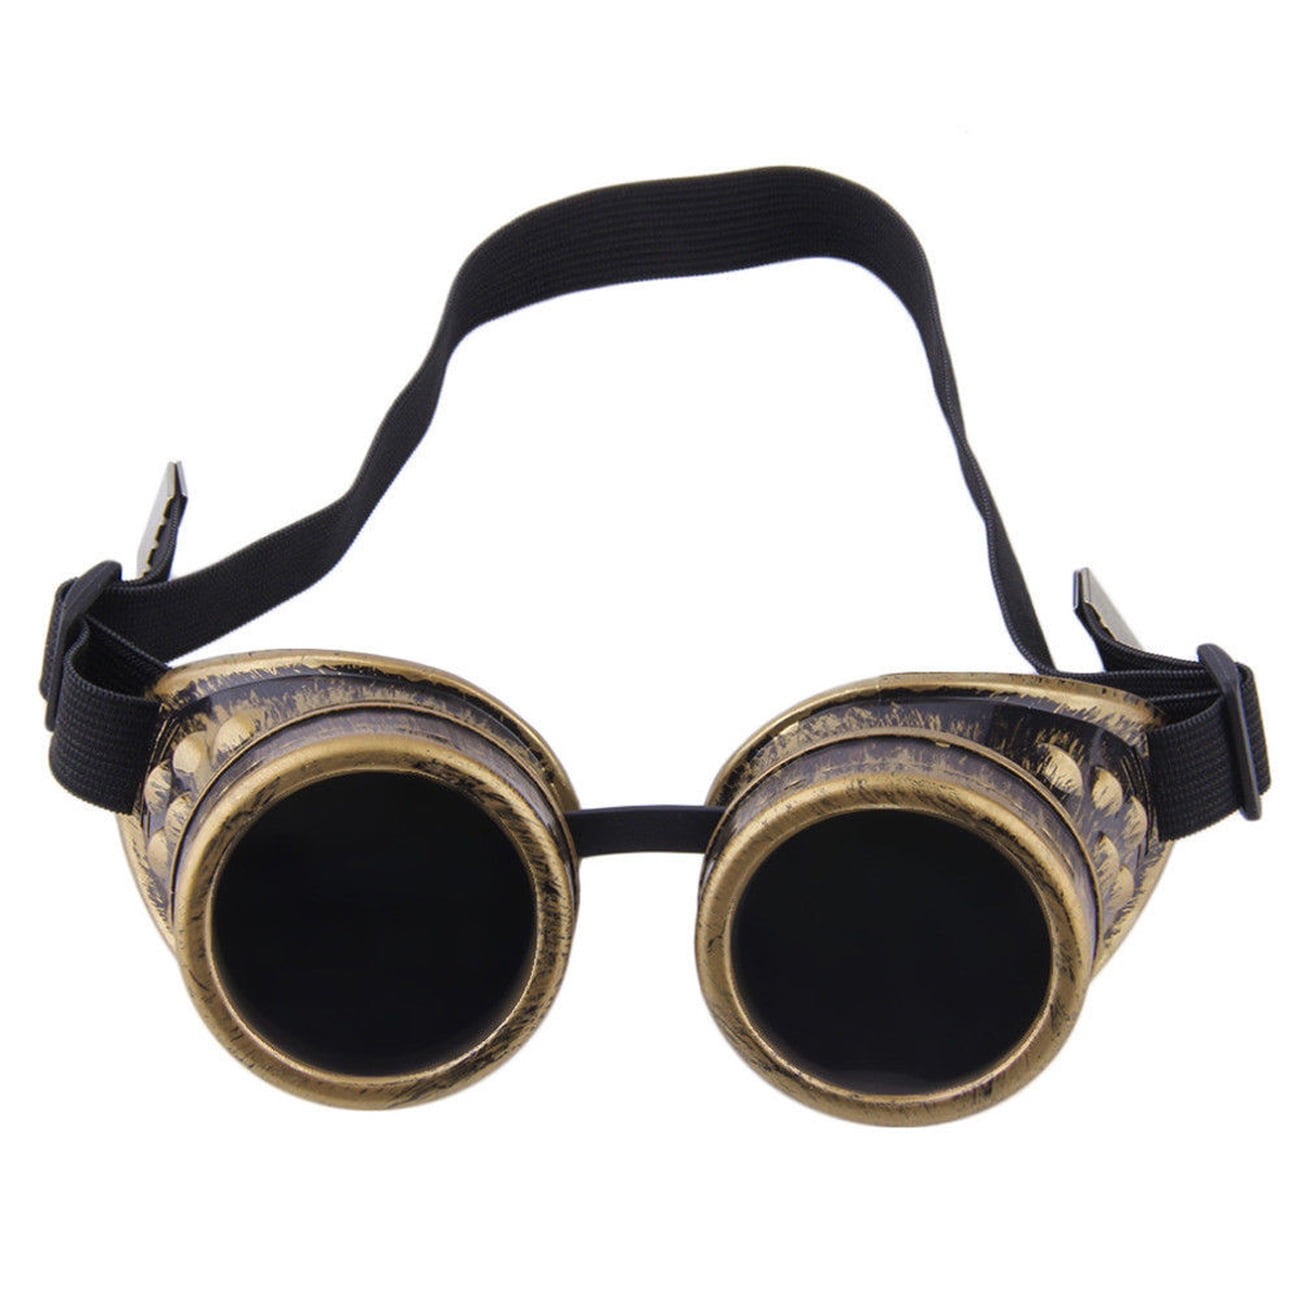 MFAZ Morefaz Ltd Cyber De Soleil des Lunettes de Soudage Welding Goggles Steampunk Antique Cosplay Sunglasses Round Glasses Party Fancy Dress Black Design 